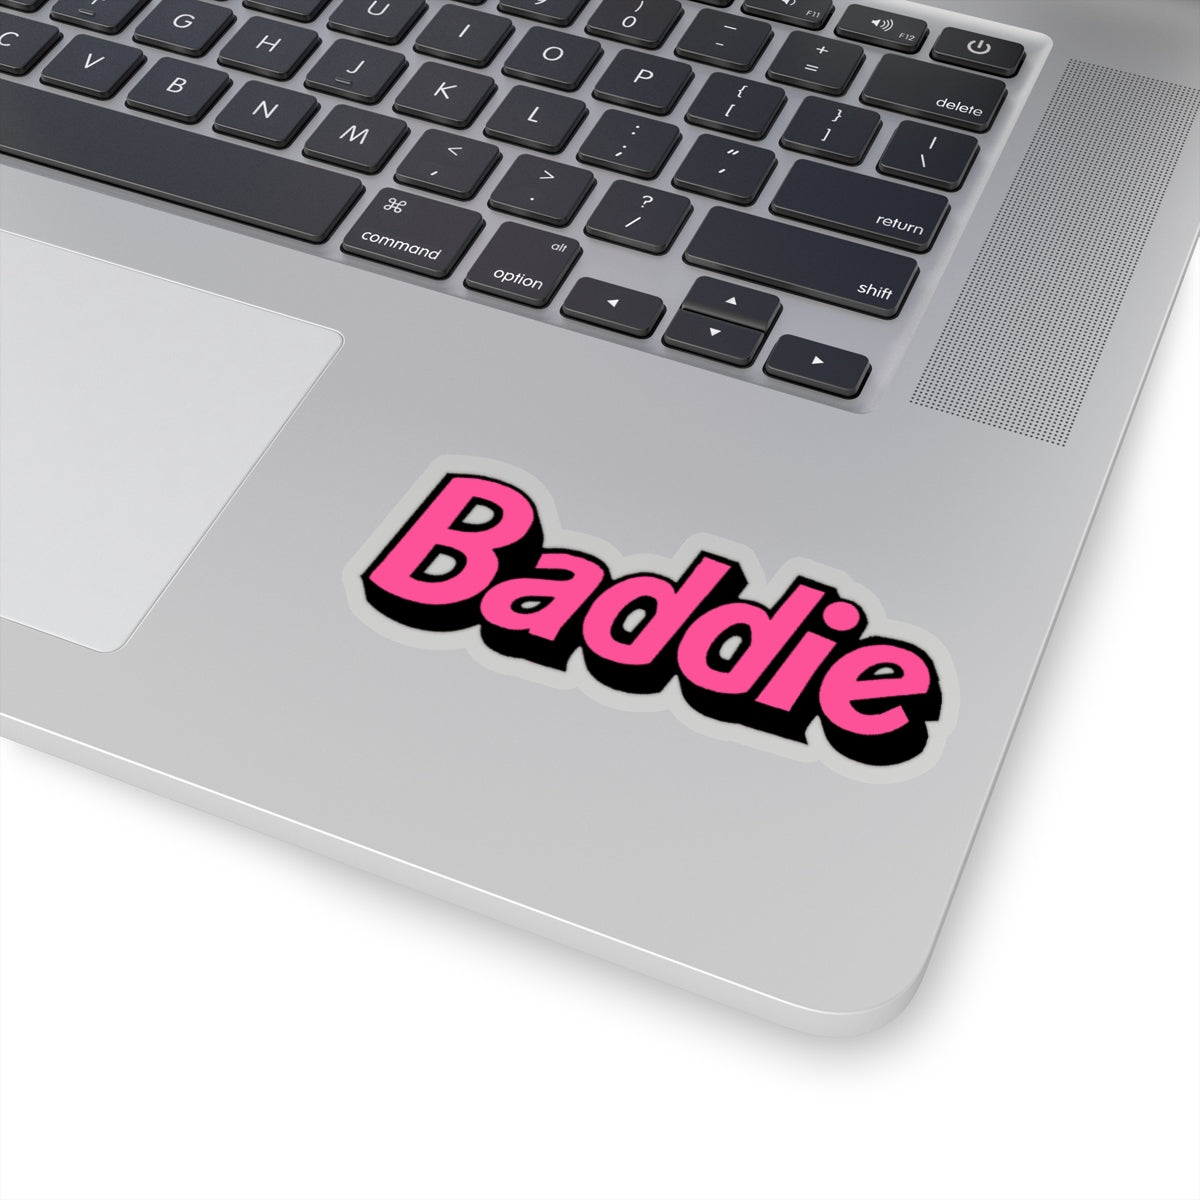 Baddie Aesthetic Laptop Skins for Sale